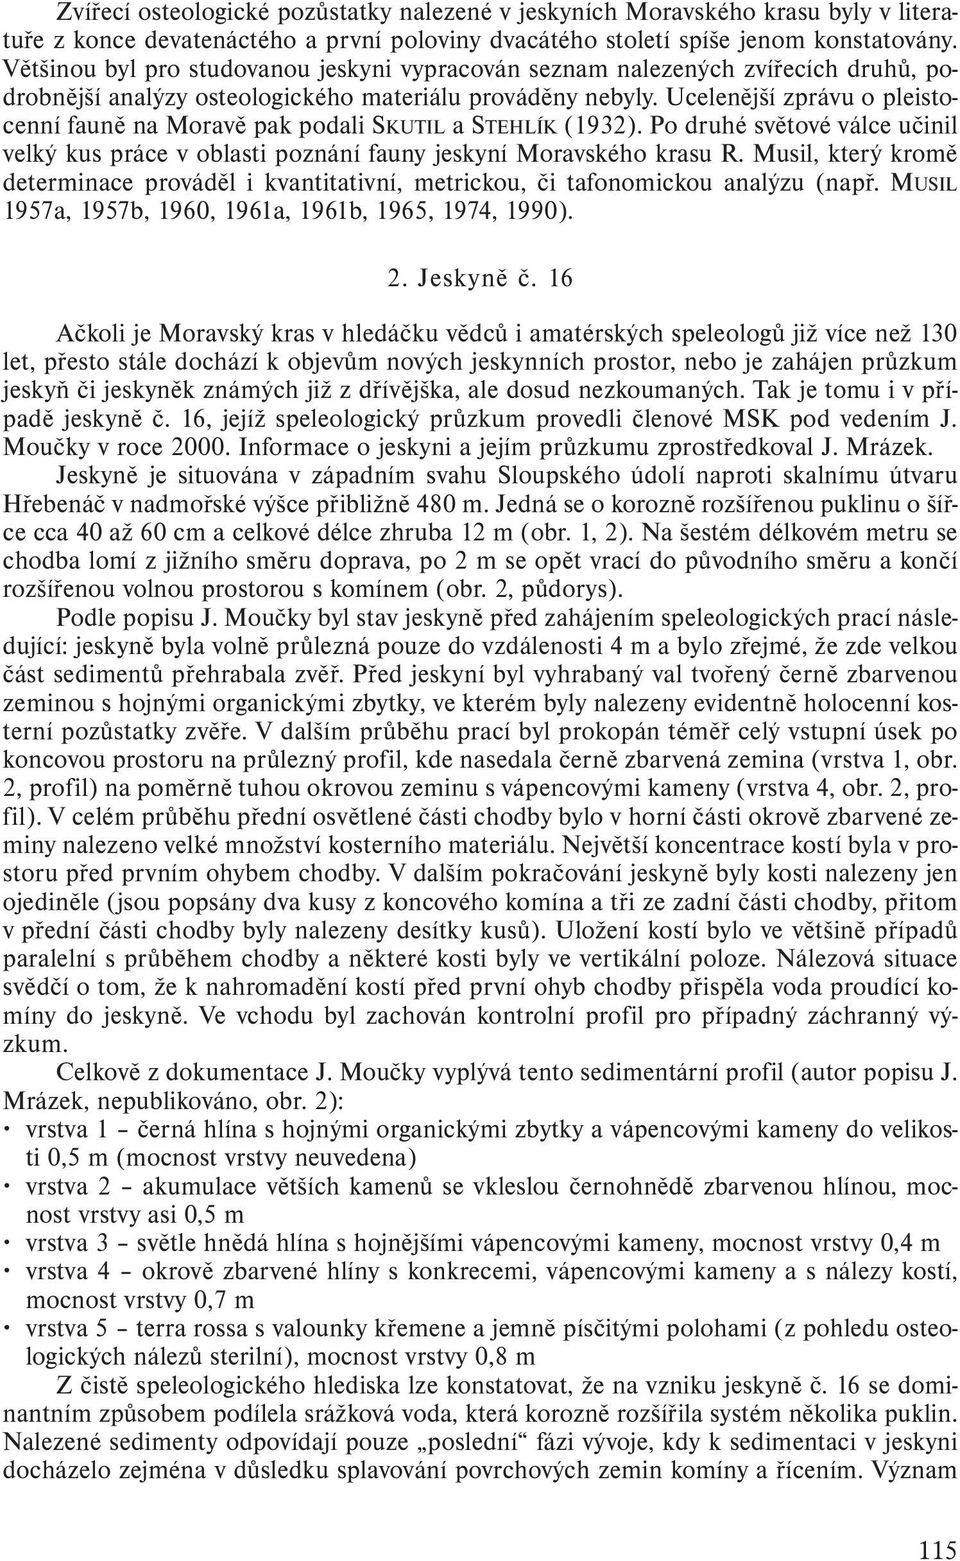 Ucelenější zprávu o pleistocenní fauně na Moravě pak podali SKUTIL a STEHLÍK (1932). Po druhé světové válce učinil velký kus práce v oblasti poznání fauny jeskyní Moravského krasu R.